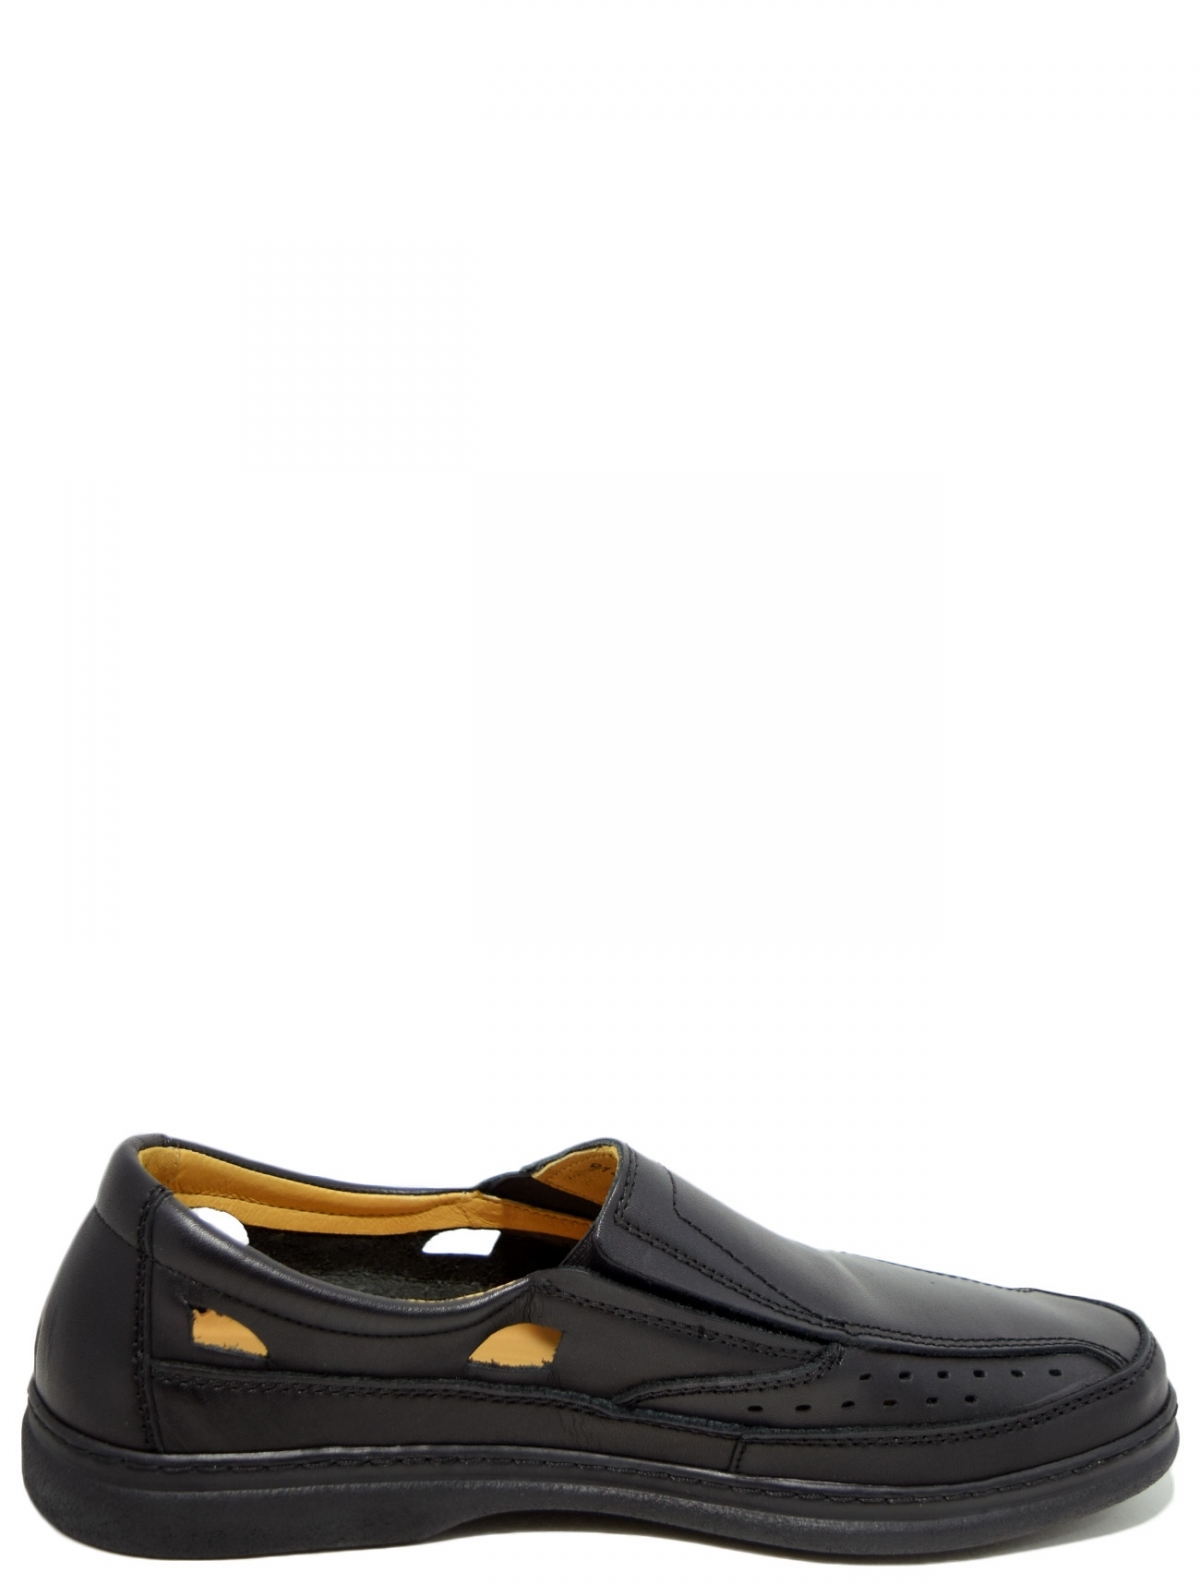 Romer 914123-02 мужские туфли